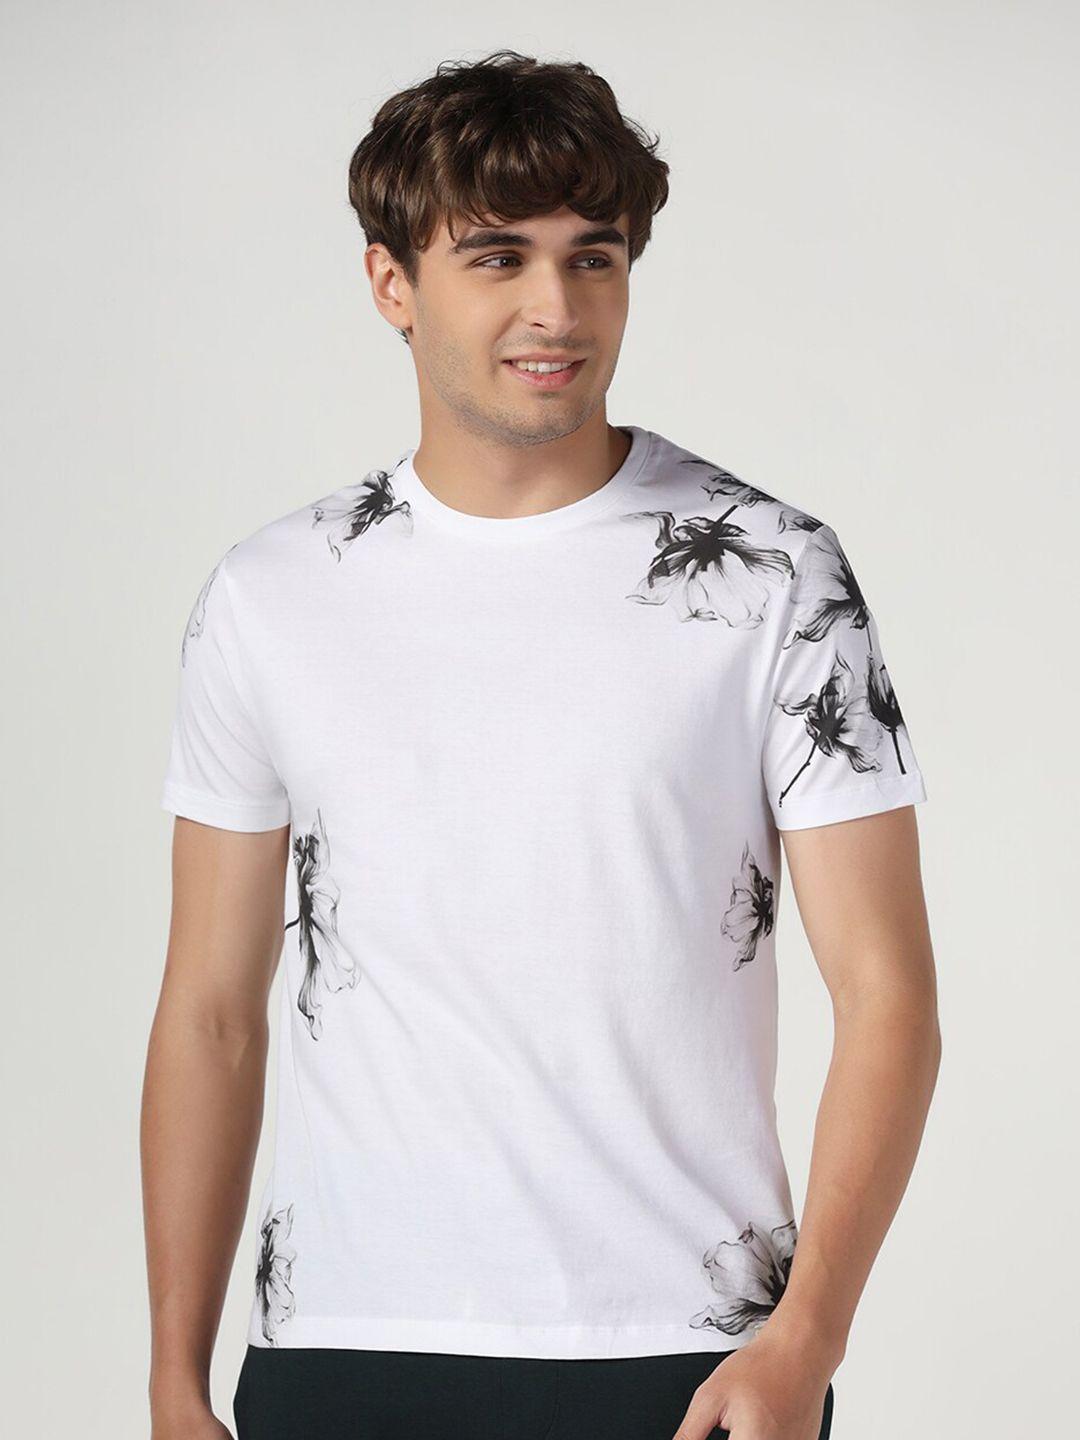 blackberrys men floral printed cotton slim fit t-shirt